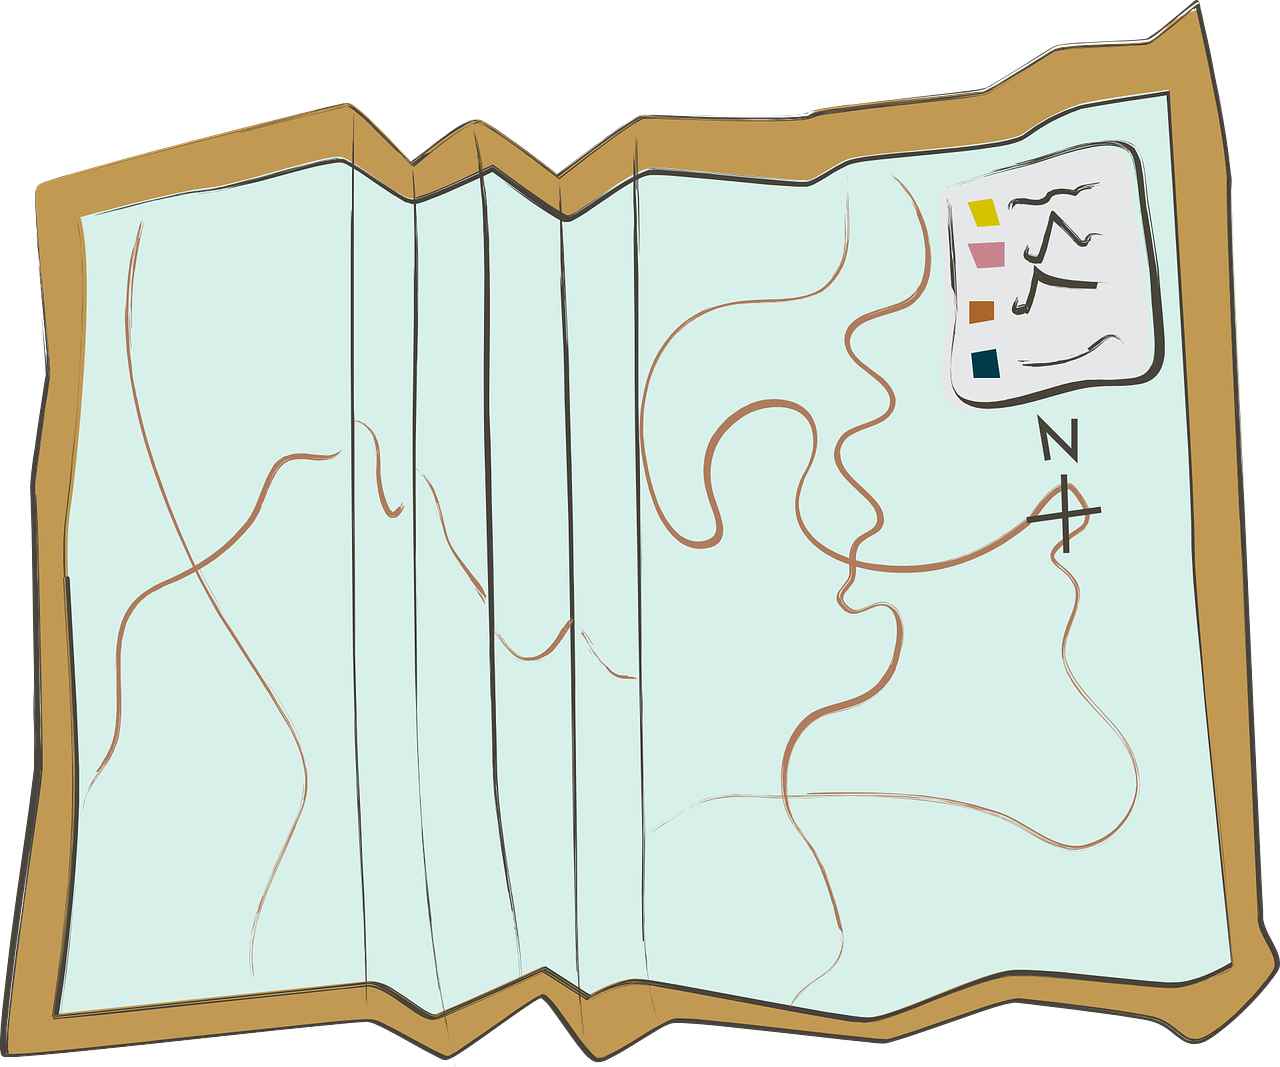 Feuille de route pour la création de métadonnées culturelles, représentée par une carte avec itinéraire.